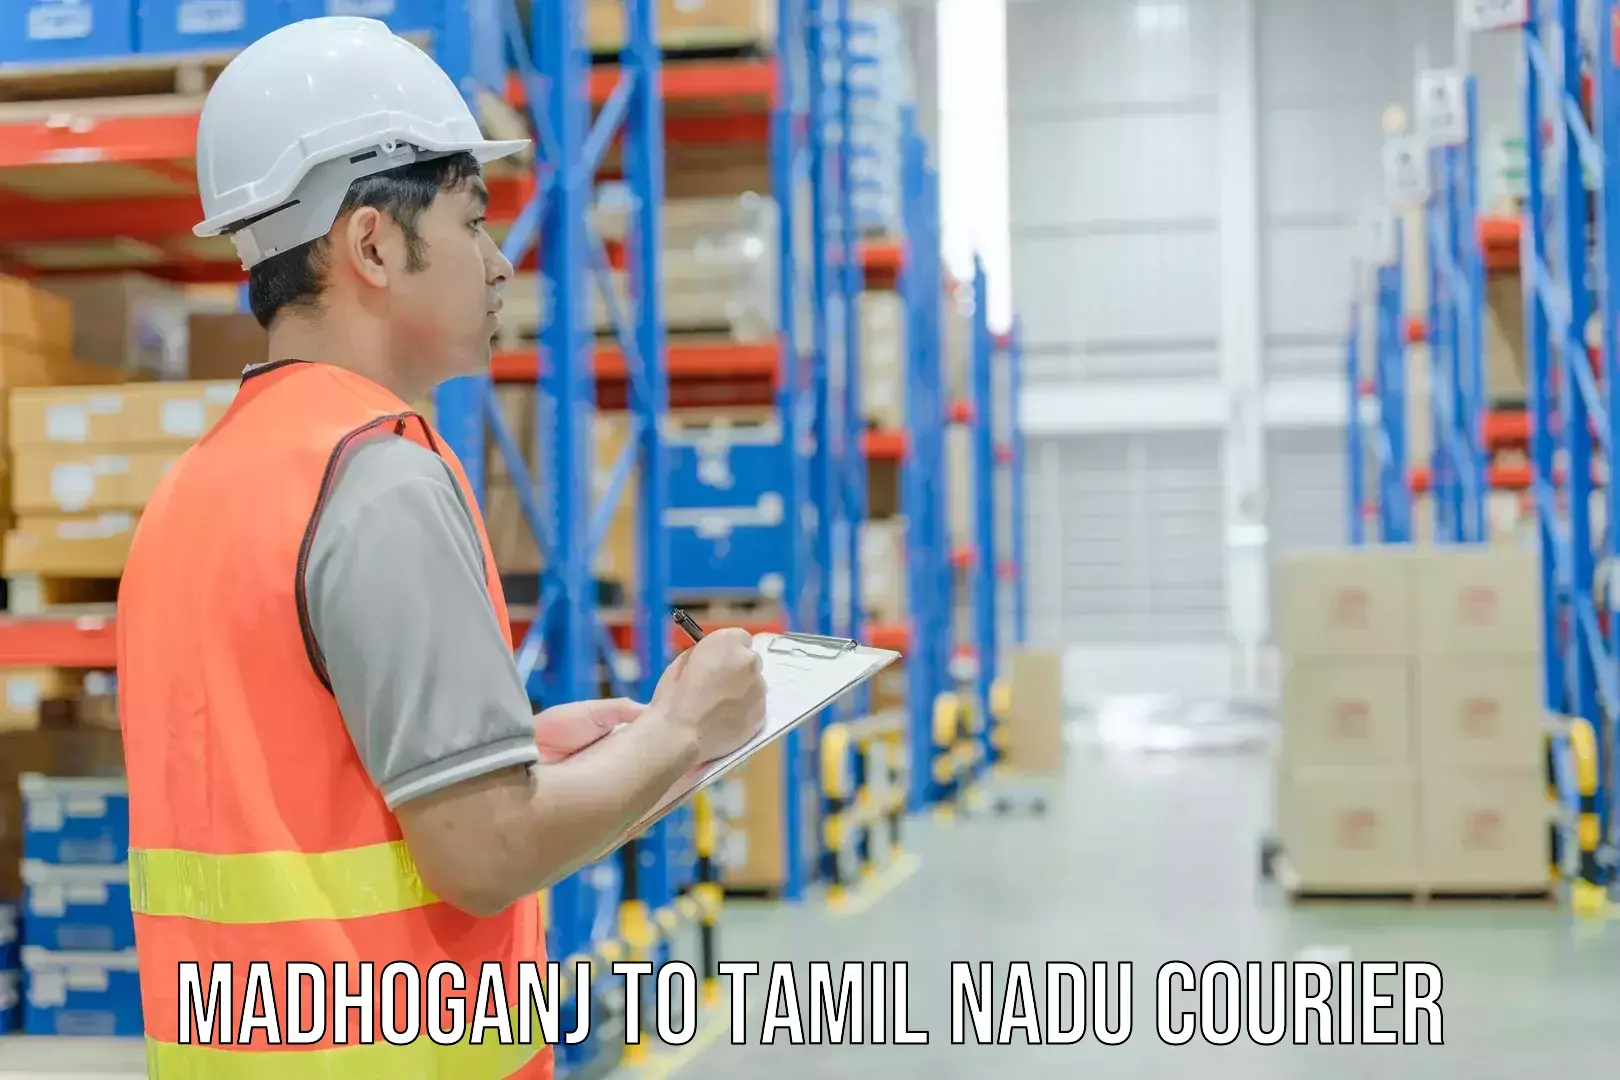 Lightweight courier Madhoganj to IIT Madras